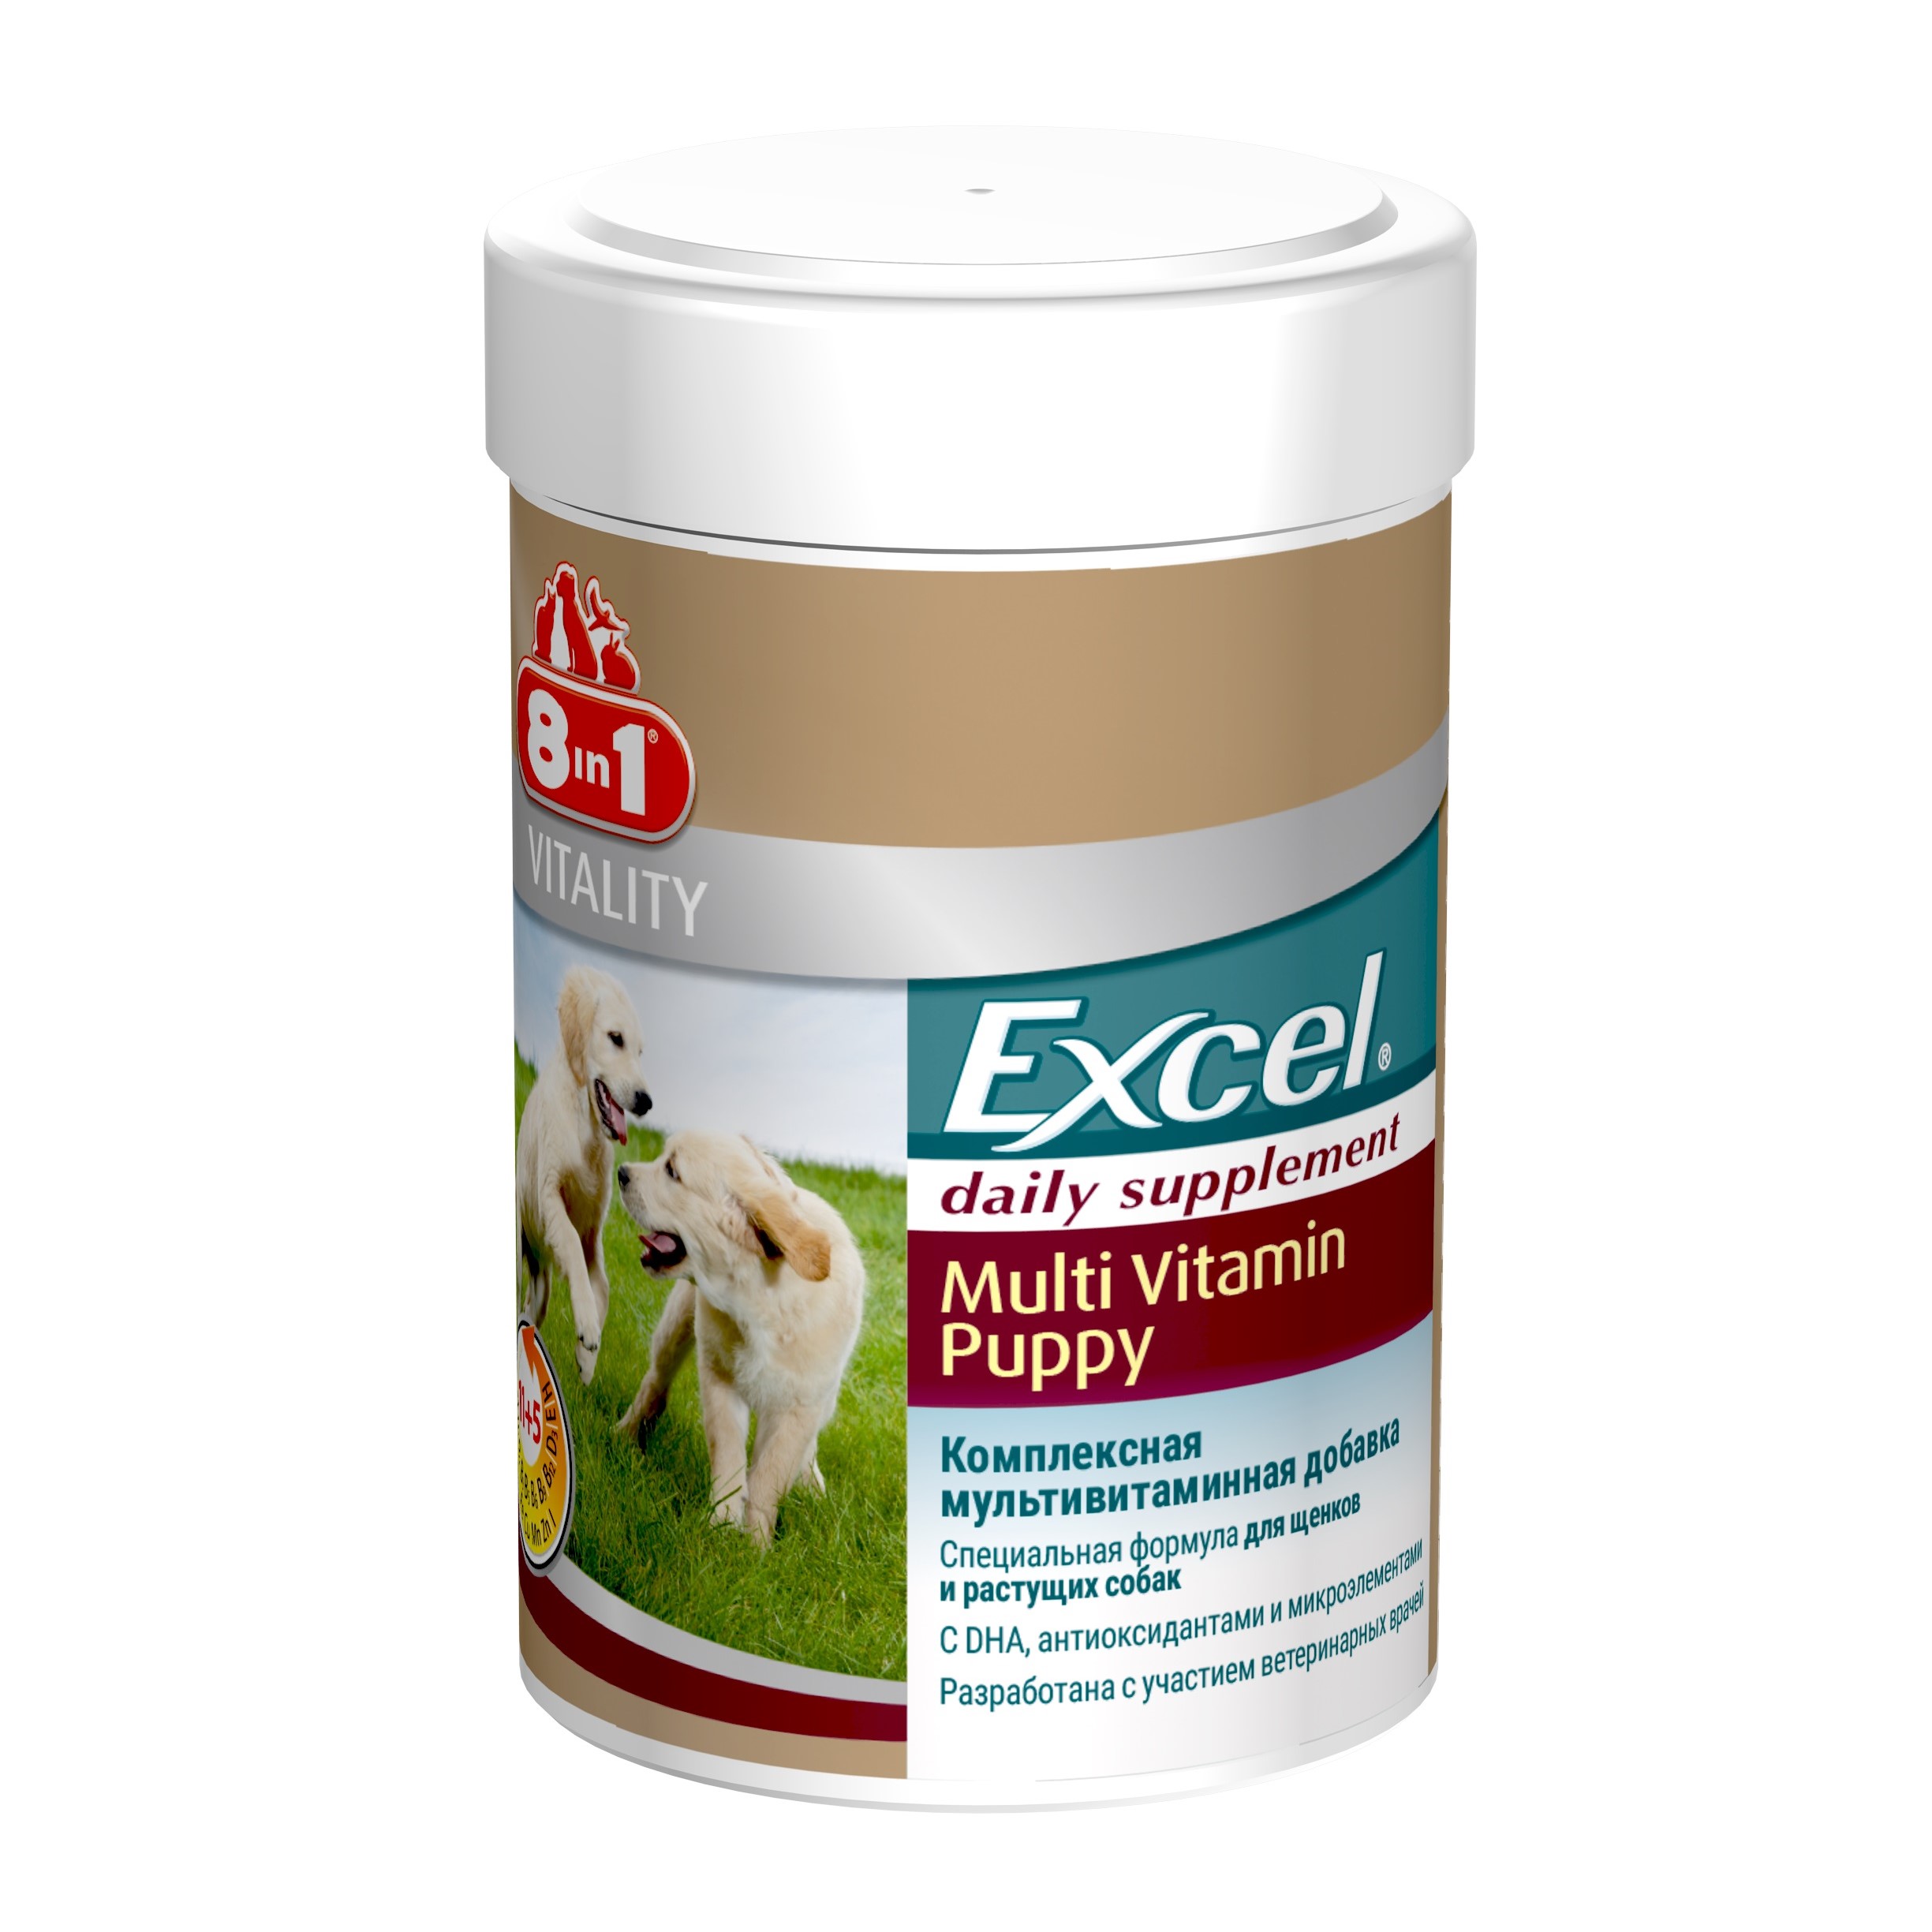 8in1 Excel Multivitamin Puppy Мультивитамины для щенков, 100 таблеток